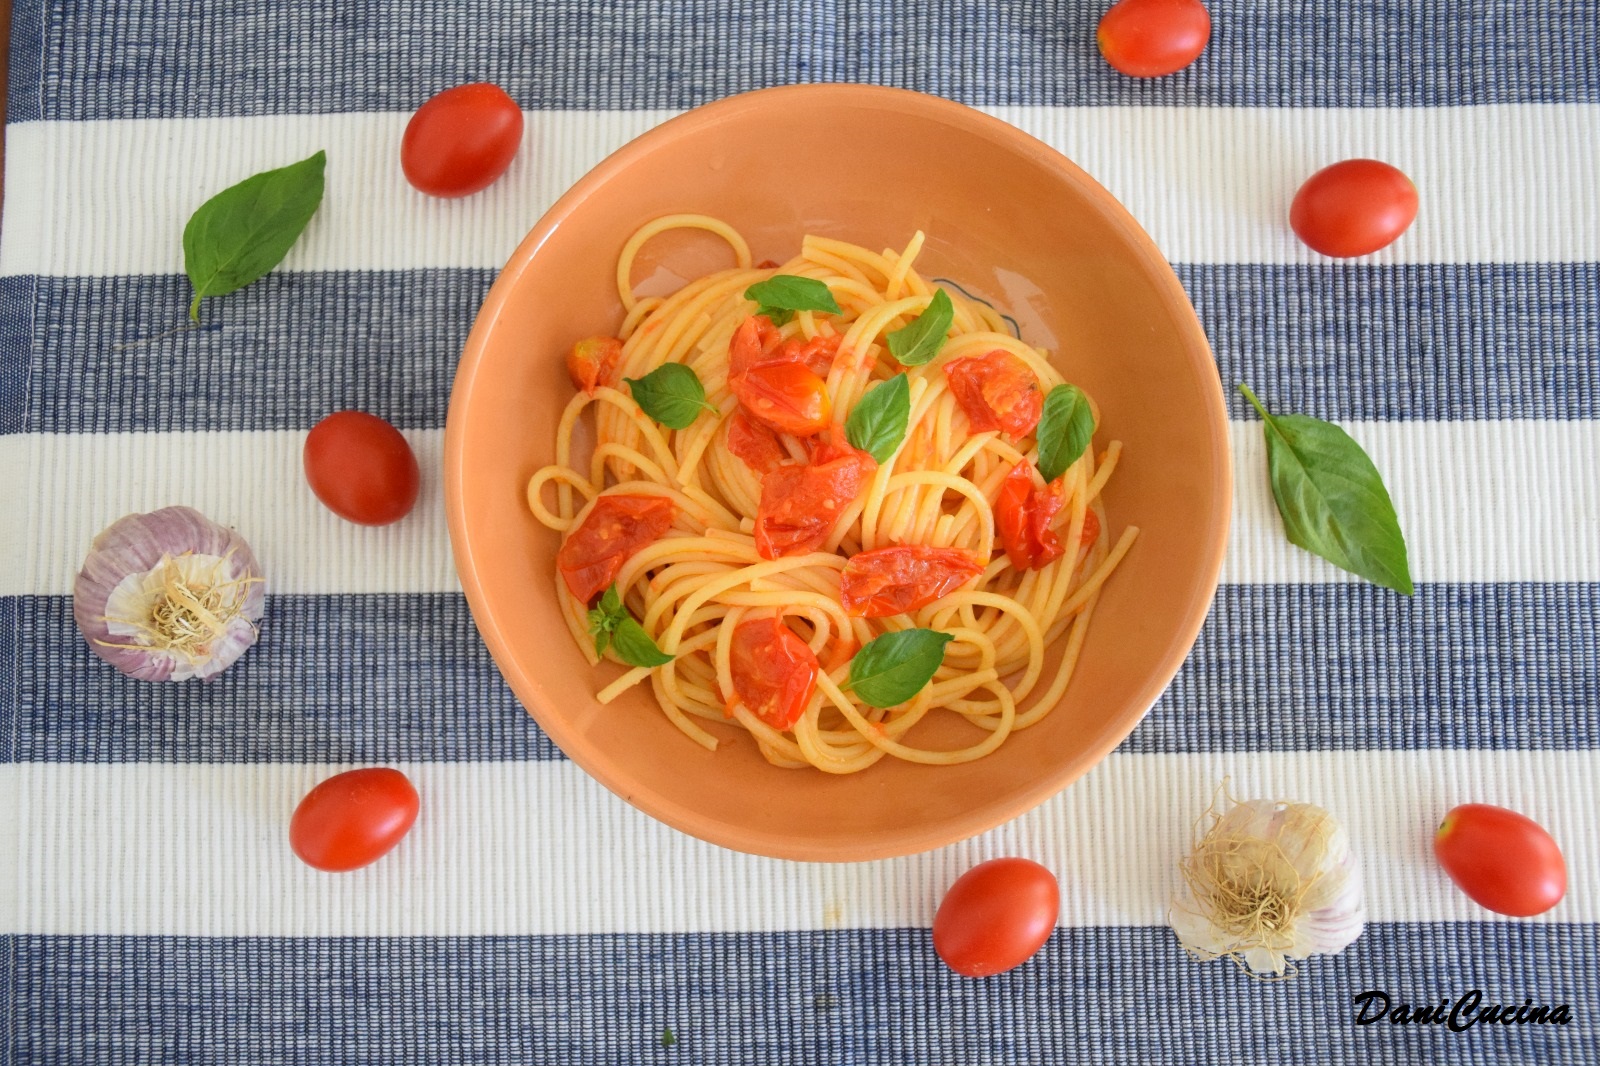 Spaghetti aglio olio e pomodorini